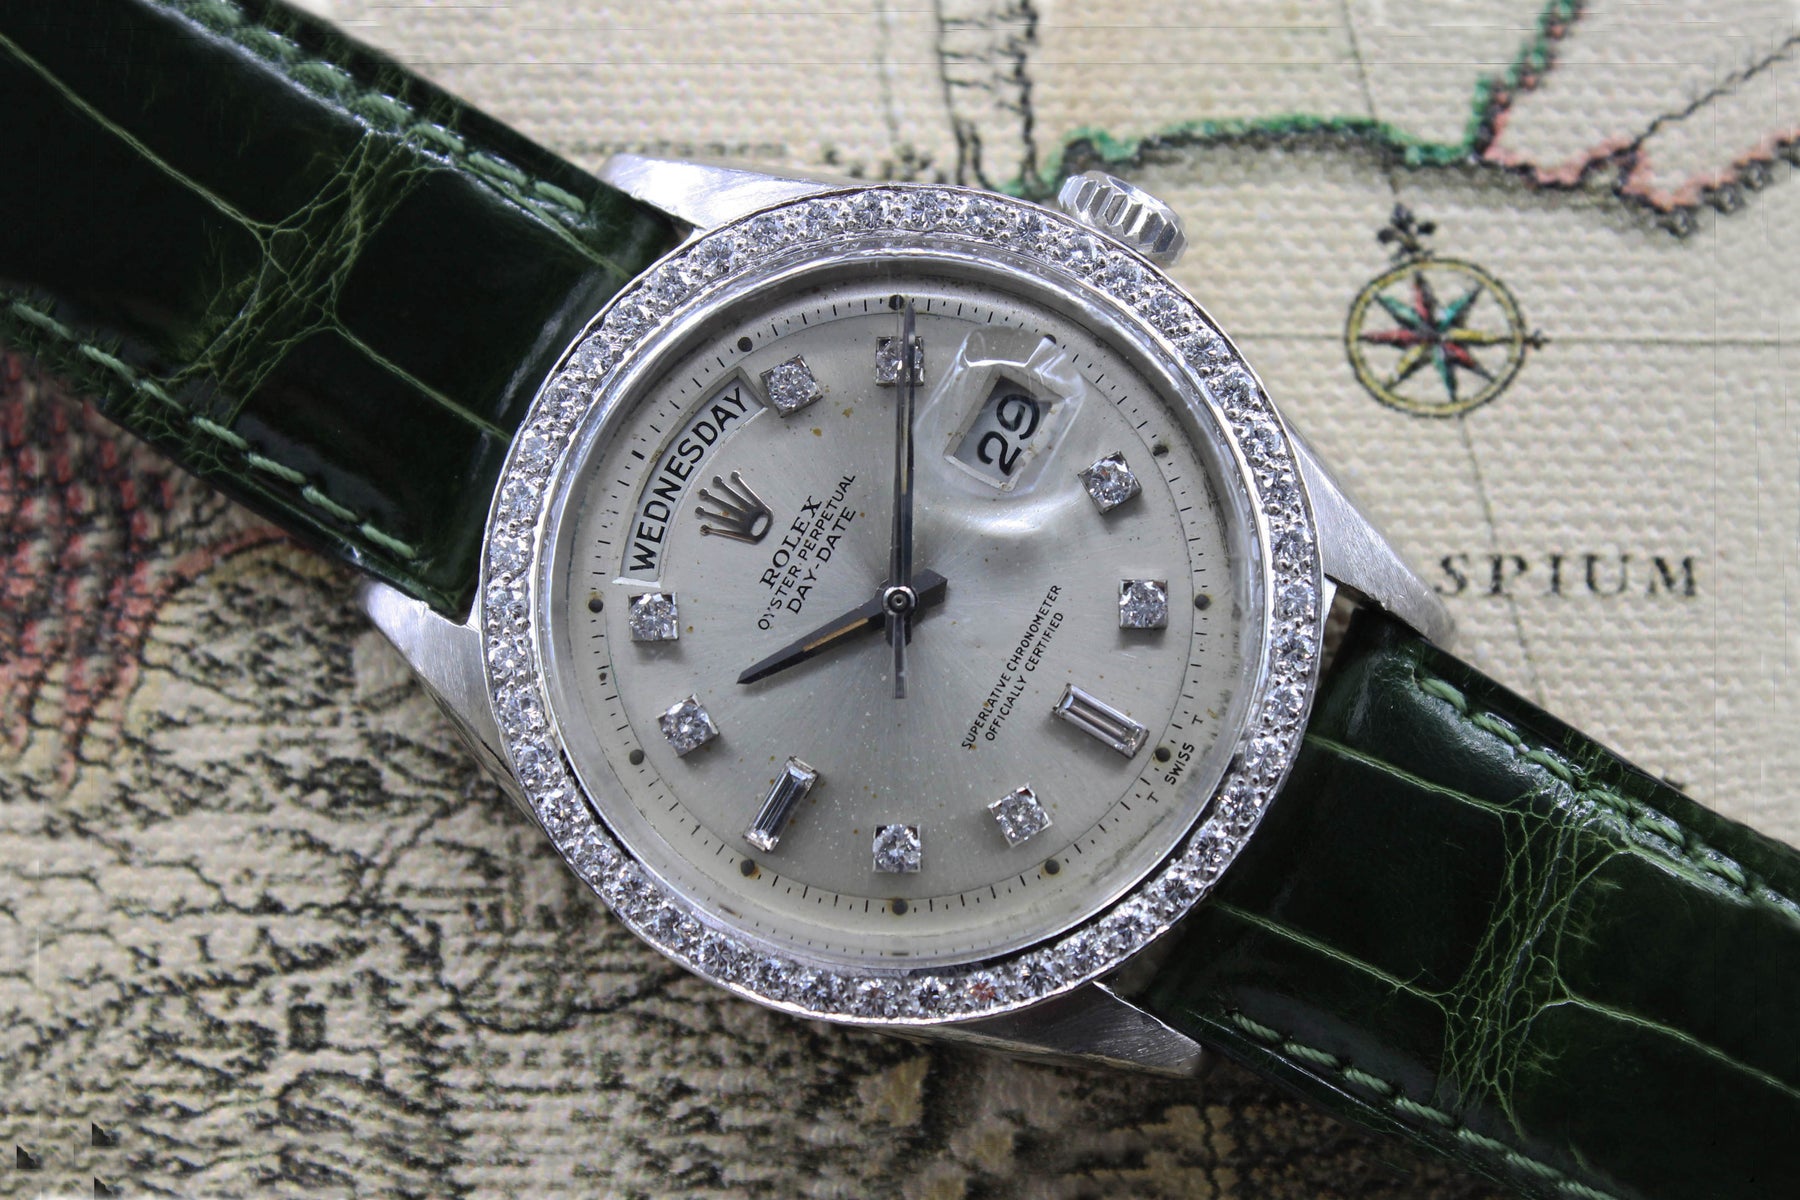 Rolex Day Date Platinum Ref. 1804 Year 1964